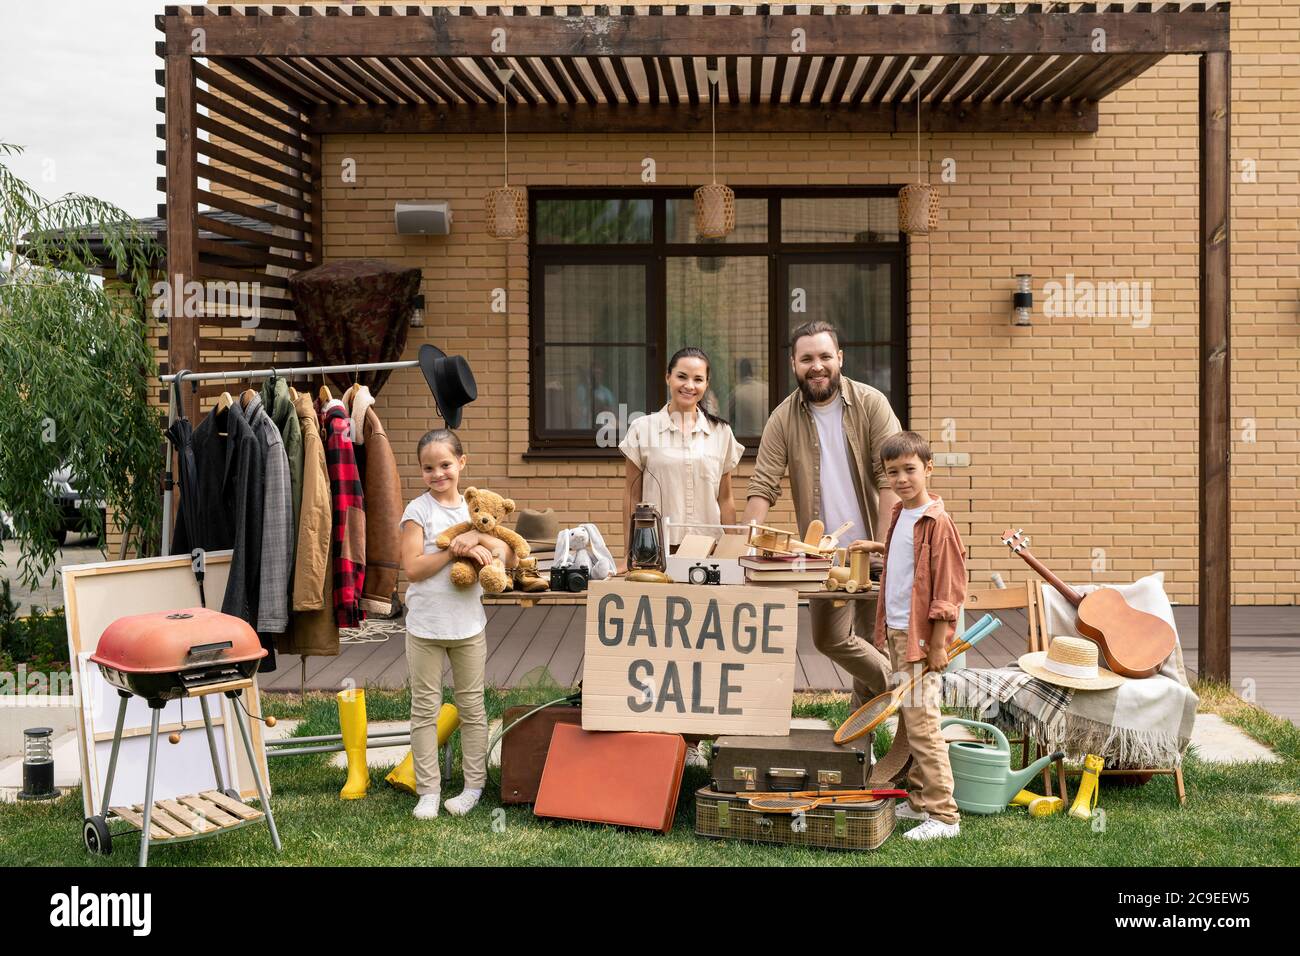 Ritratto di famiglia sorridente amichevole con i capretti carini che vendono insieme roba alla vendita del garage nel cortile Foto Stock